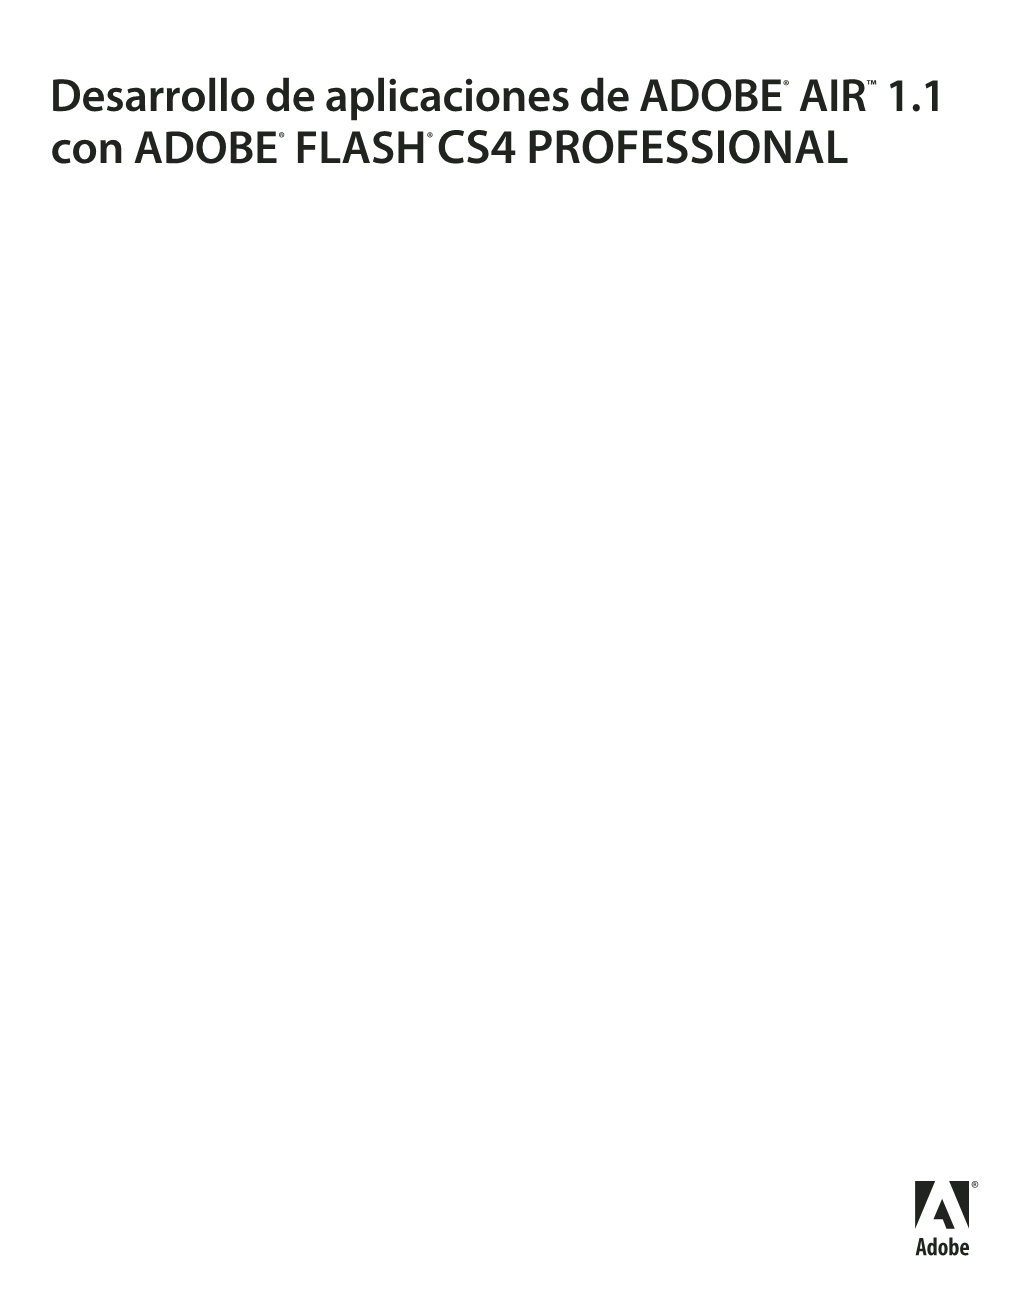 Desarrollo De Aplicaciones De ADOBE® AIR™ 1.1 Con ADOBE® FLASH® CS4 PROFESSIONAL ©Copyright 2008 Adobe Systems Incorporated